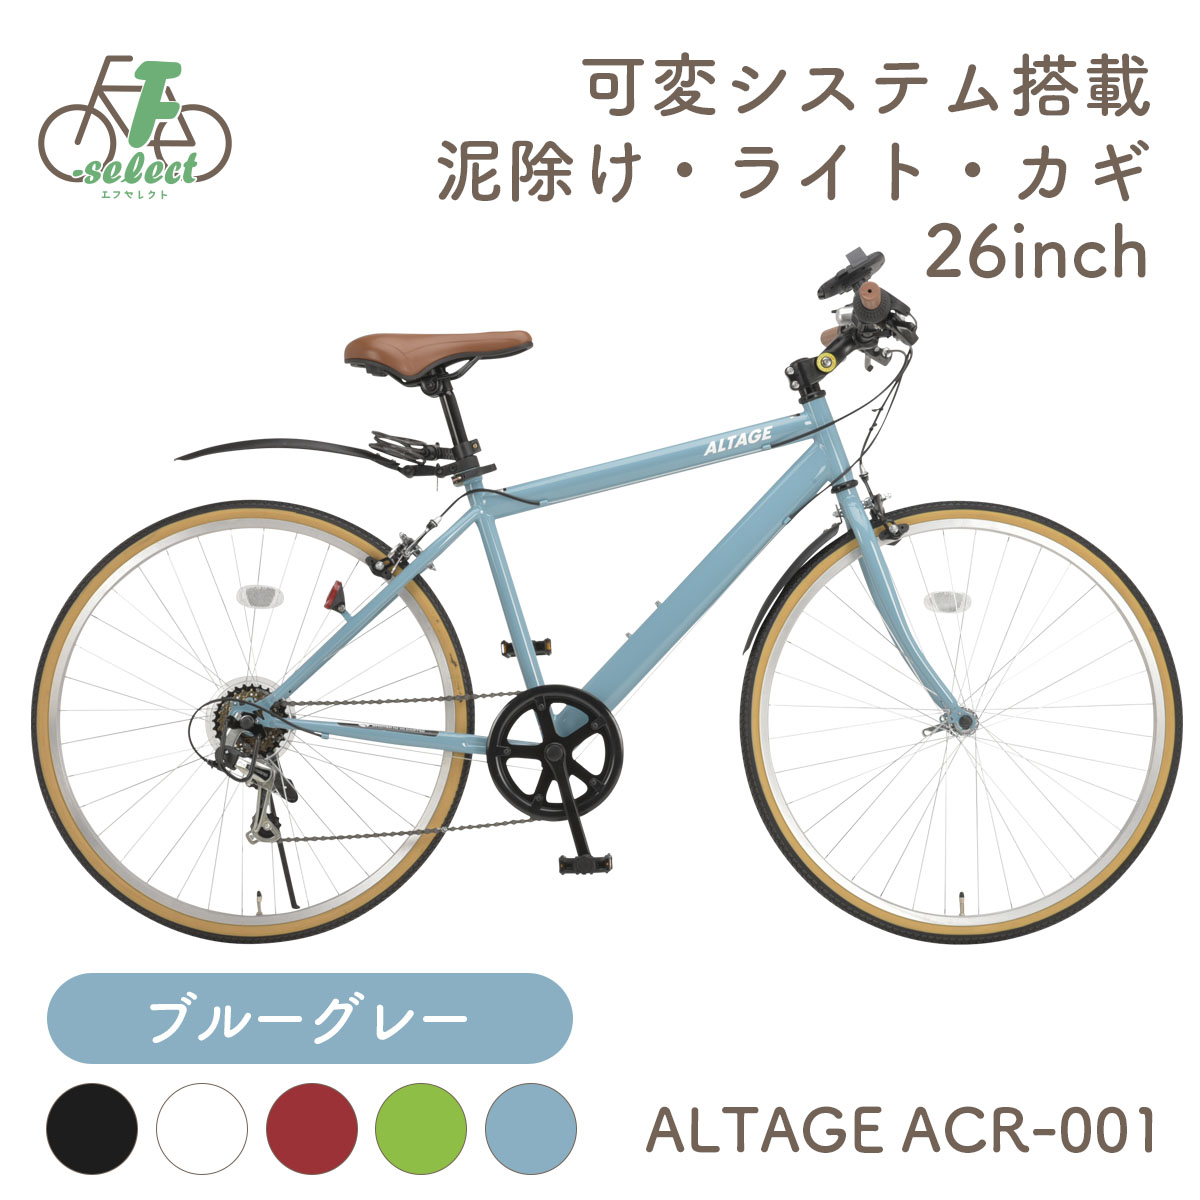 クロスバイク 自転車 26インチ 完成品出荷 / 置き配可能 泥除け ライト カギ 可変ステム 6段変速 軽量 アルテージ ALTAGE ACR-001